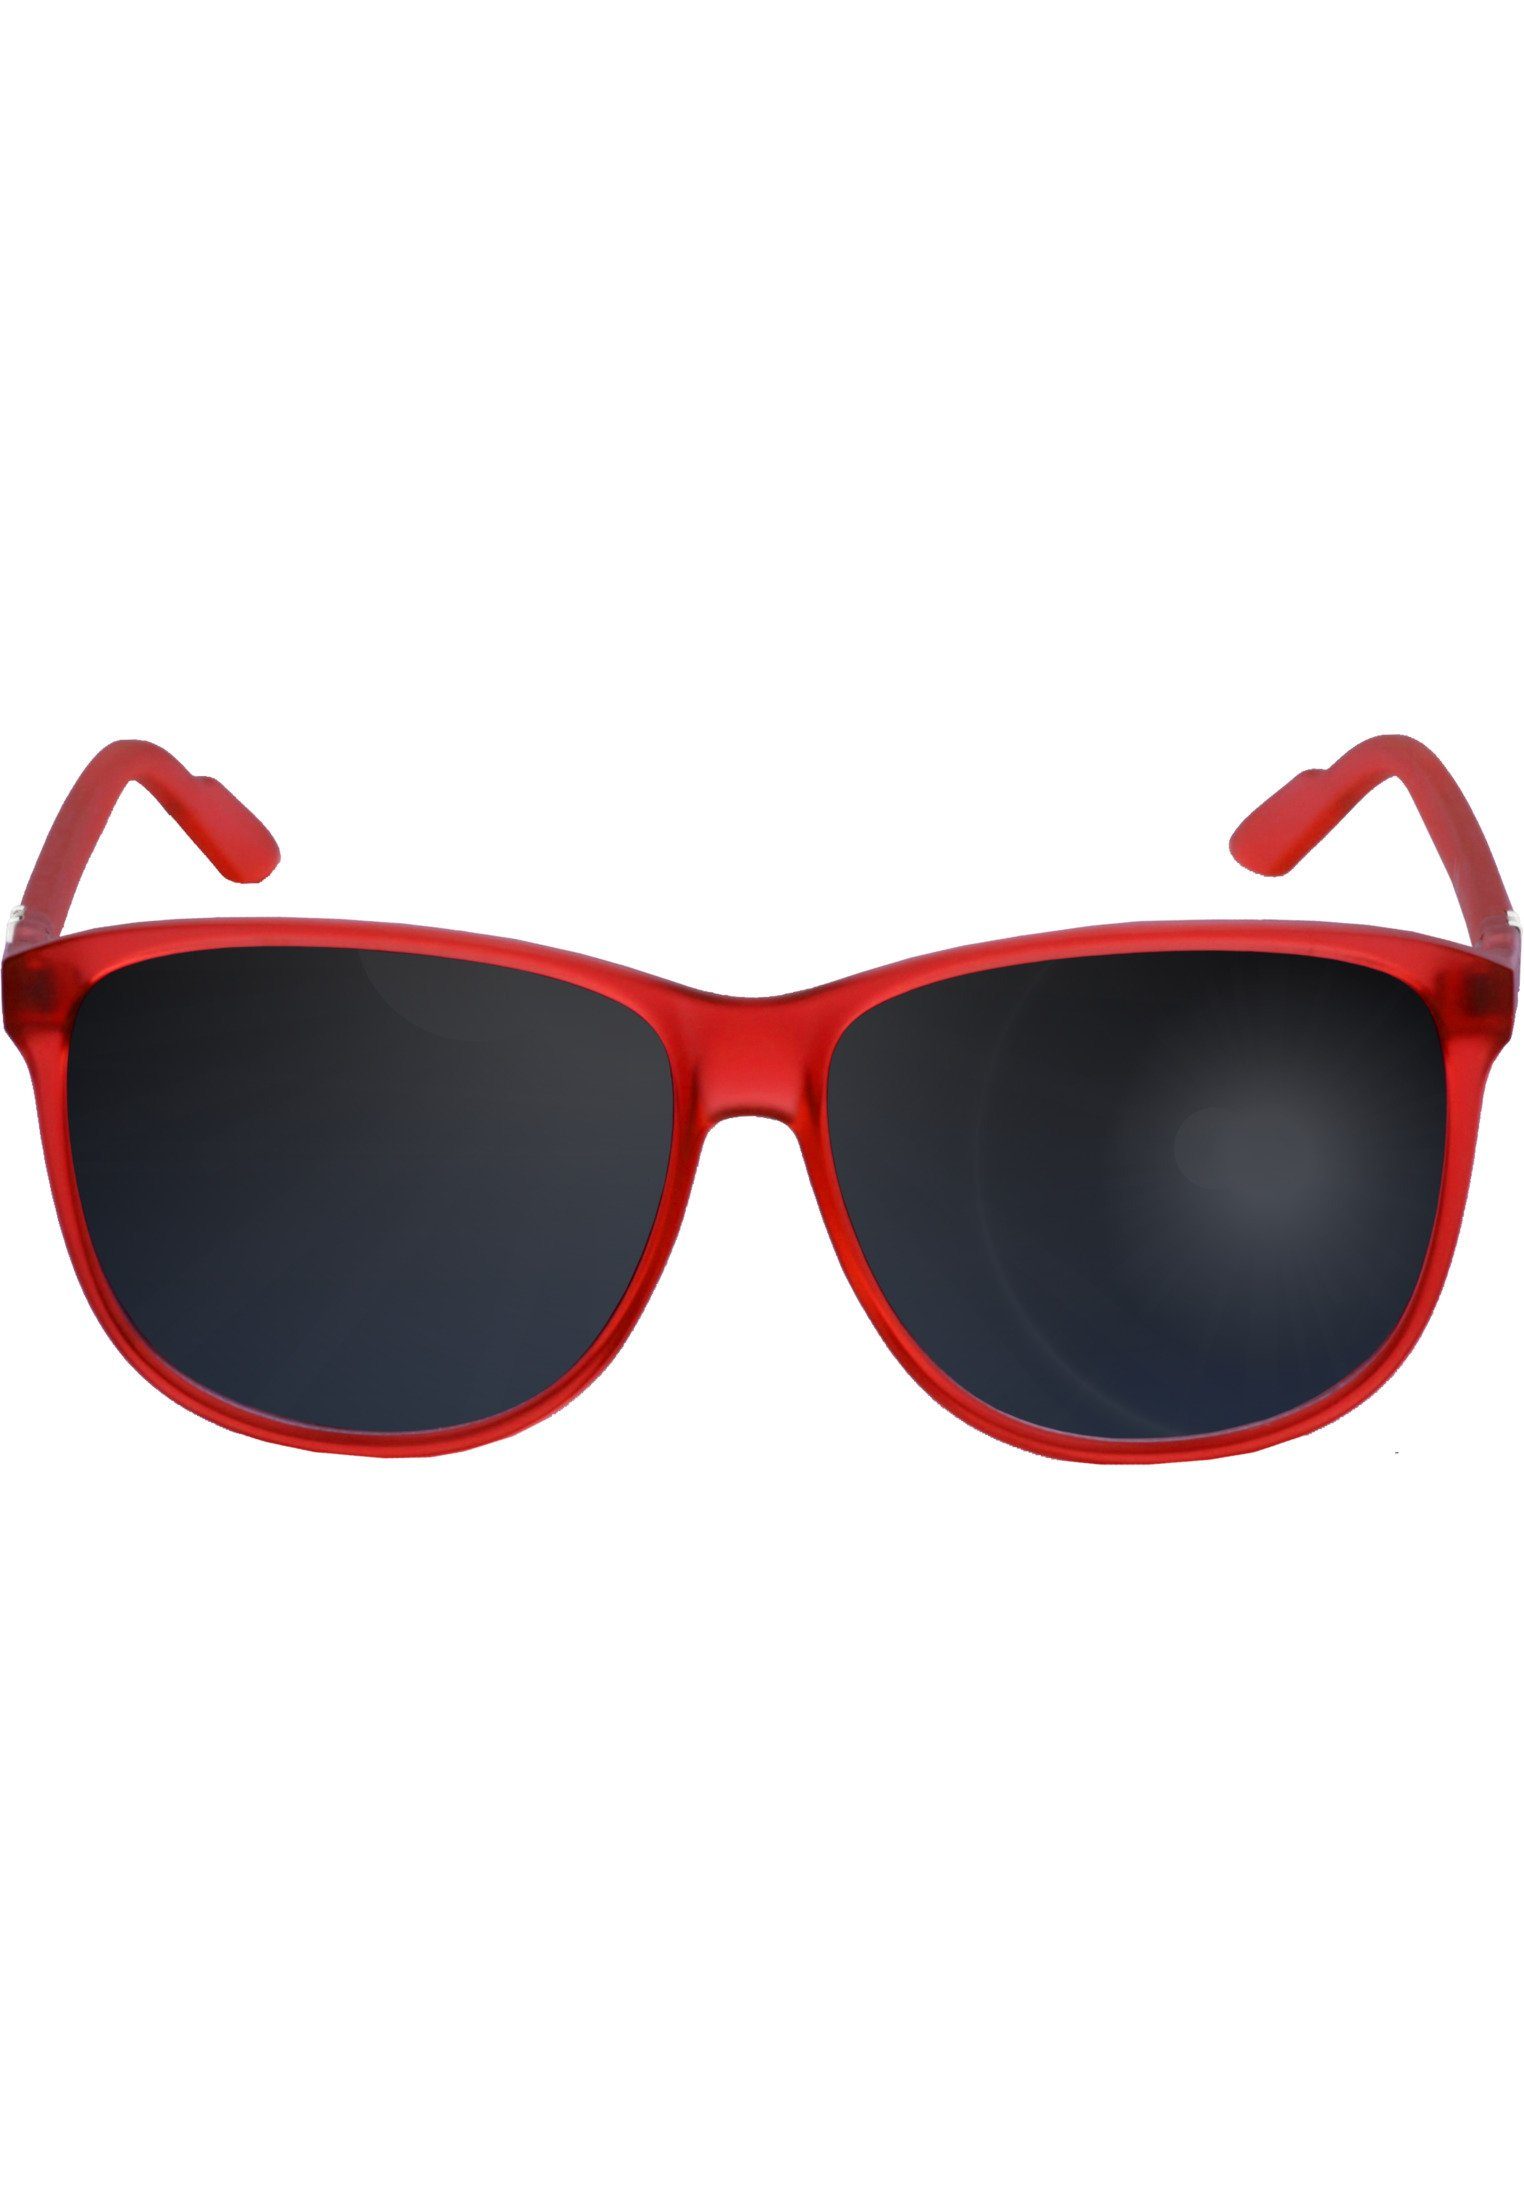 Tiefstpreisgarantie MSTRDS Sonnenbrille Accessoires Sunglasses red Chirwa